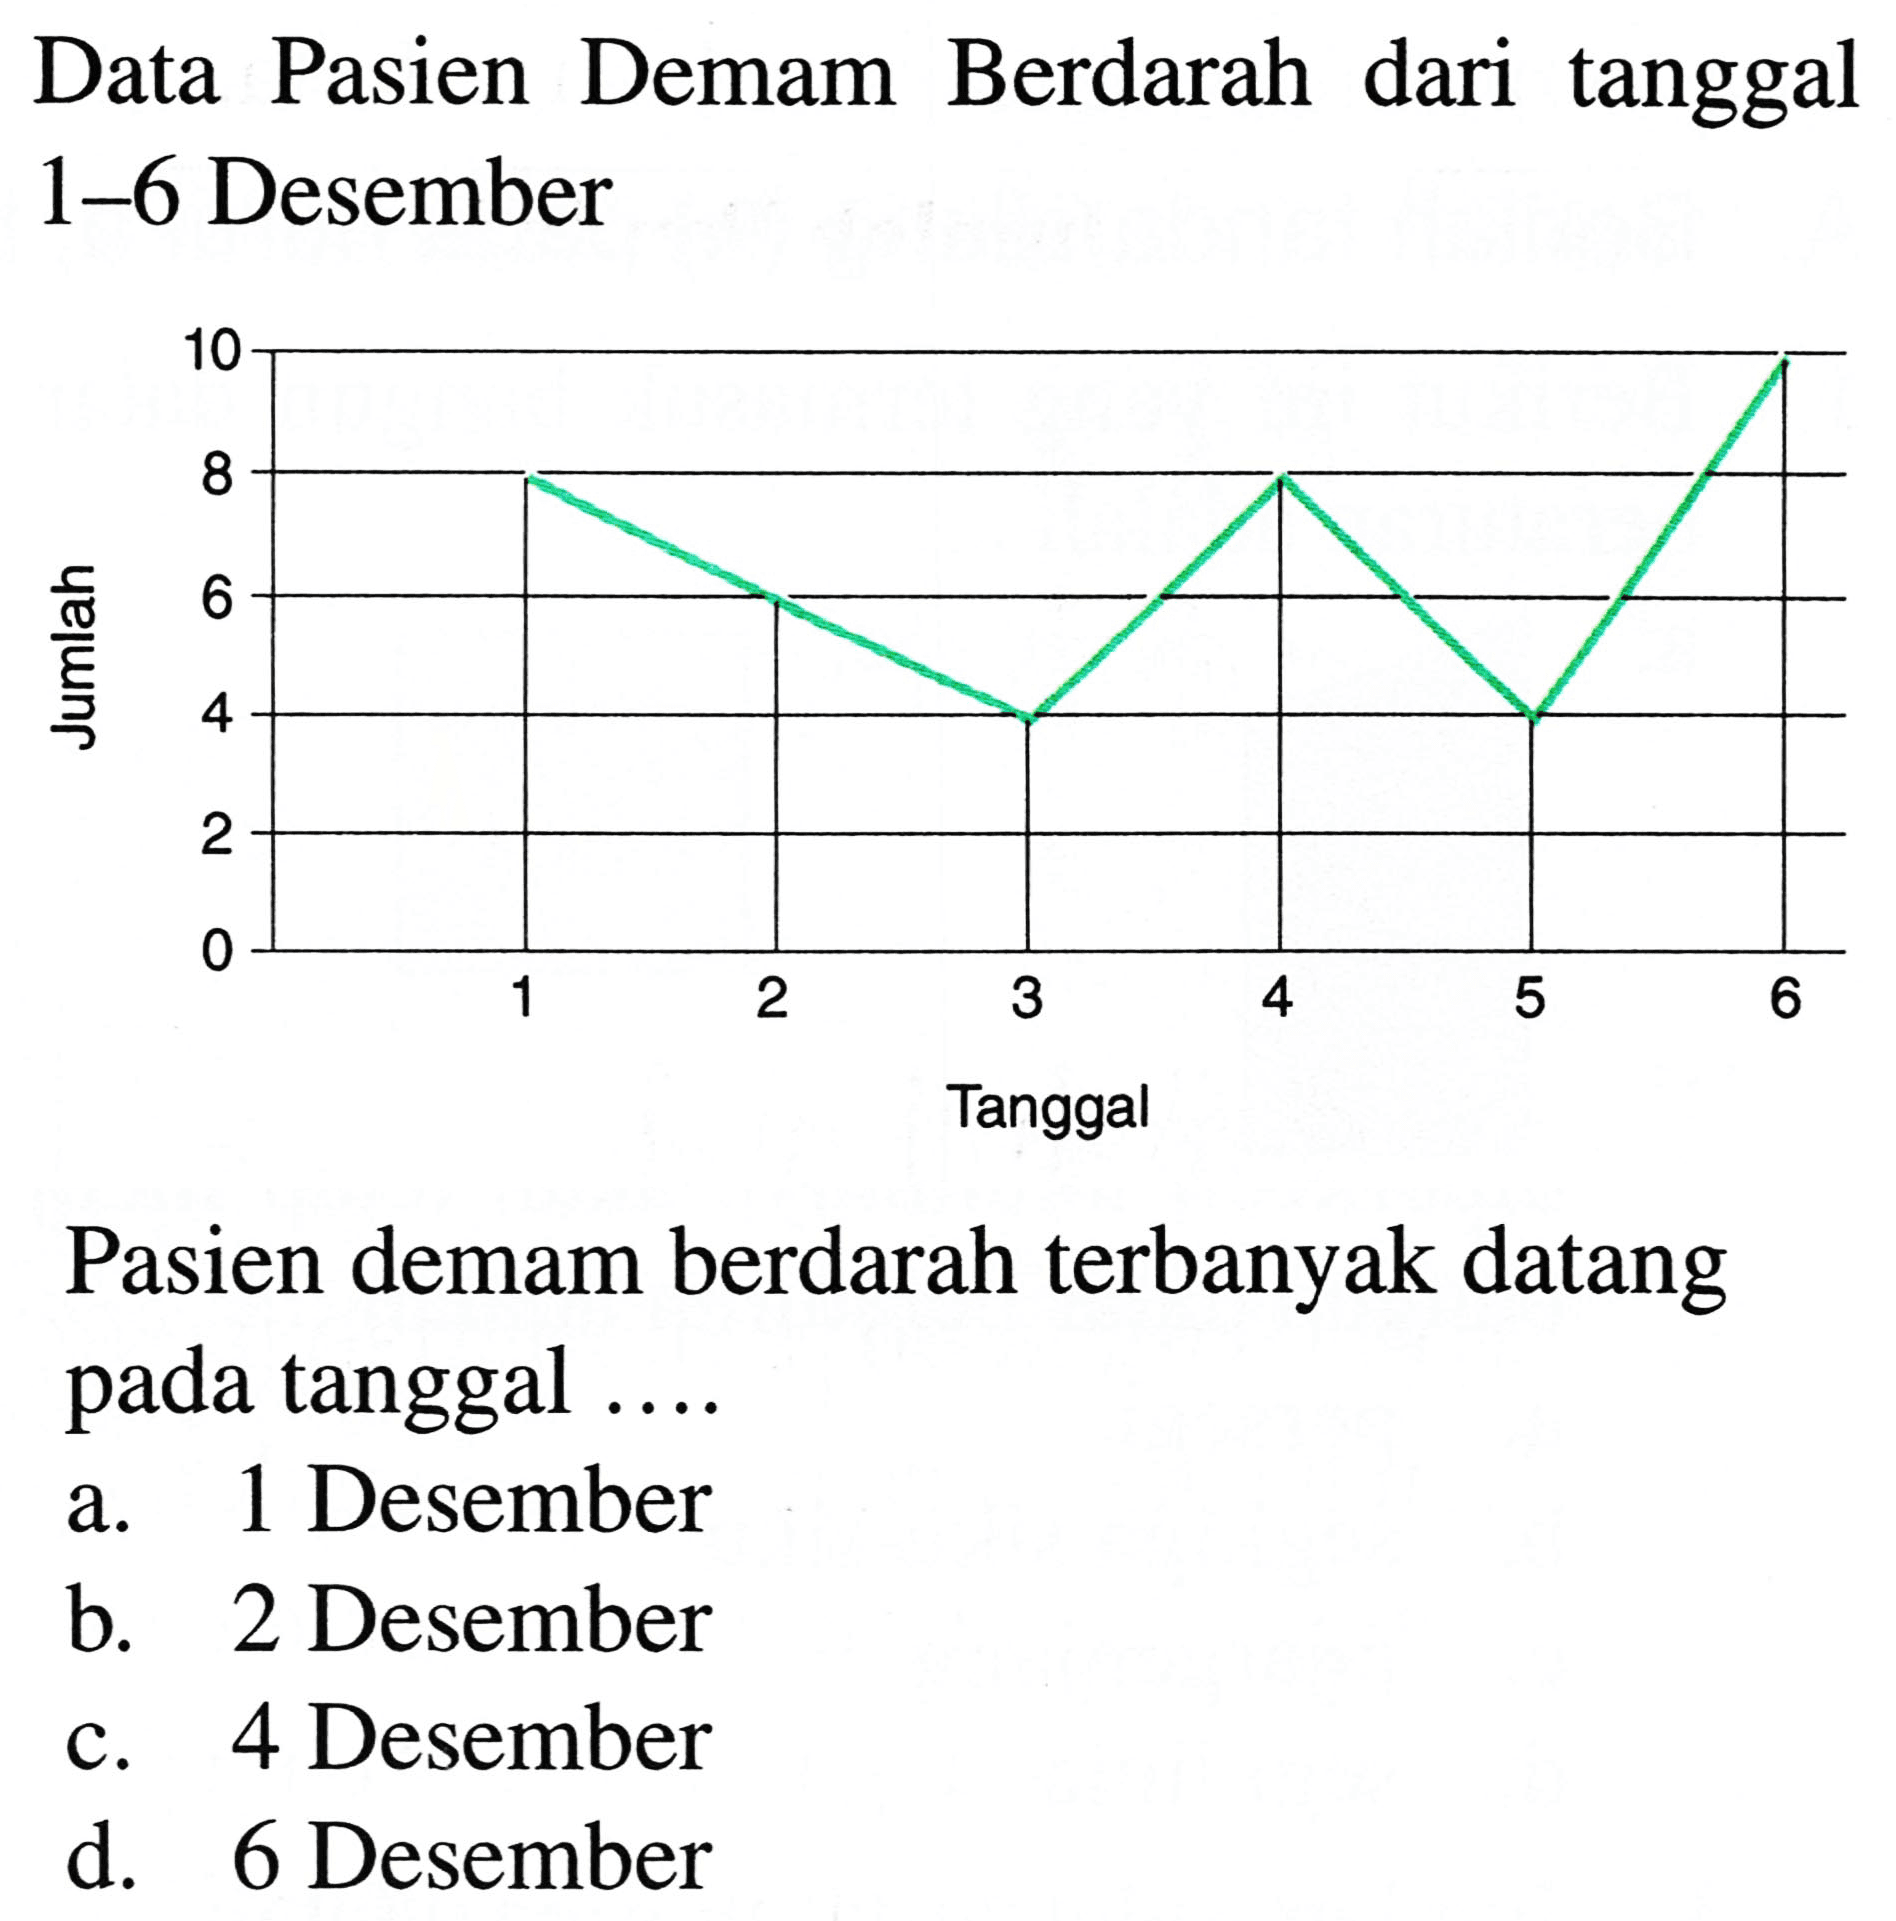 Data Pasien Demam Berdarah dari tanggal 1-6 Desember
Pasien demam berdarah terbanyak datang pada tanggal ....
a. 1 Desember
b. 2 Desember
c. 4 Desember
d. 6 Desember